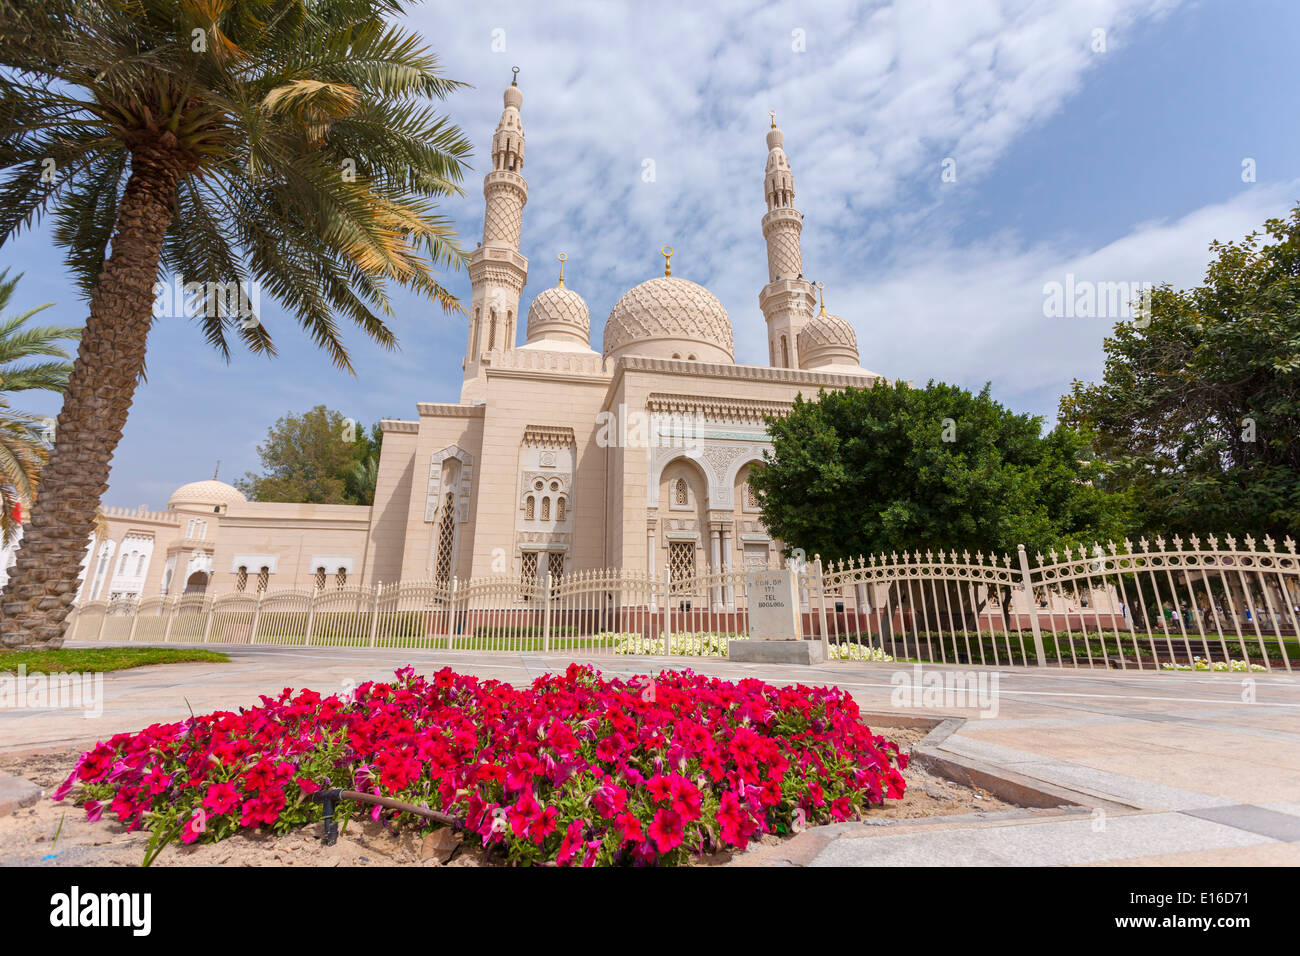 Jumeirah Moschee, ein herrliches Beispiel moderner islamischer Architektur, Dubai, Vereinigte Arabische Emirate Stockfoto